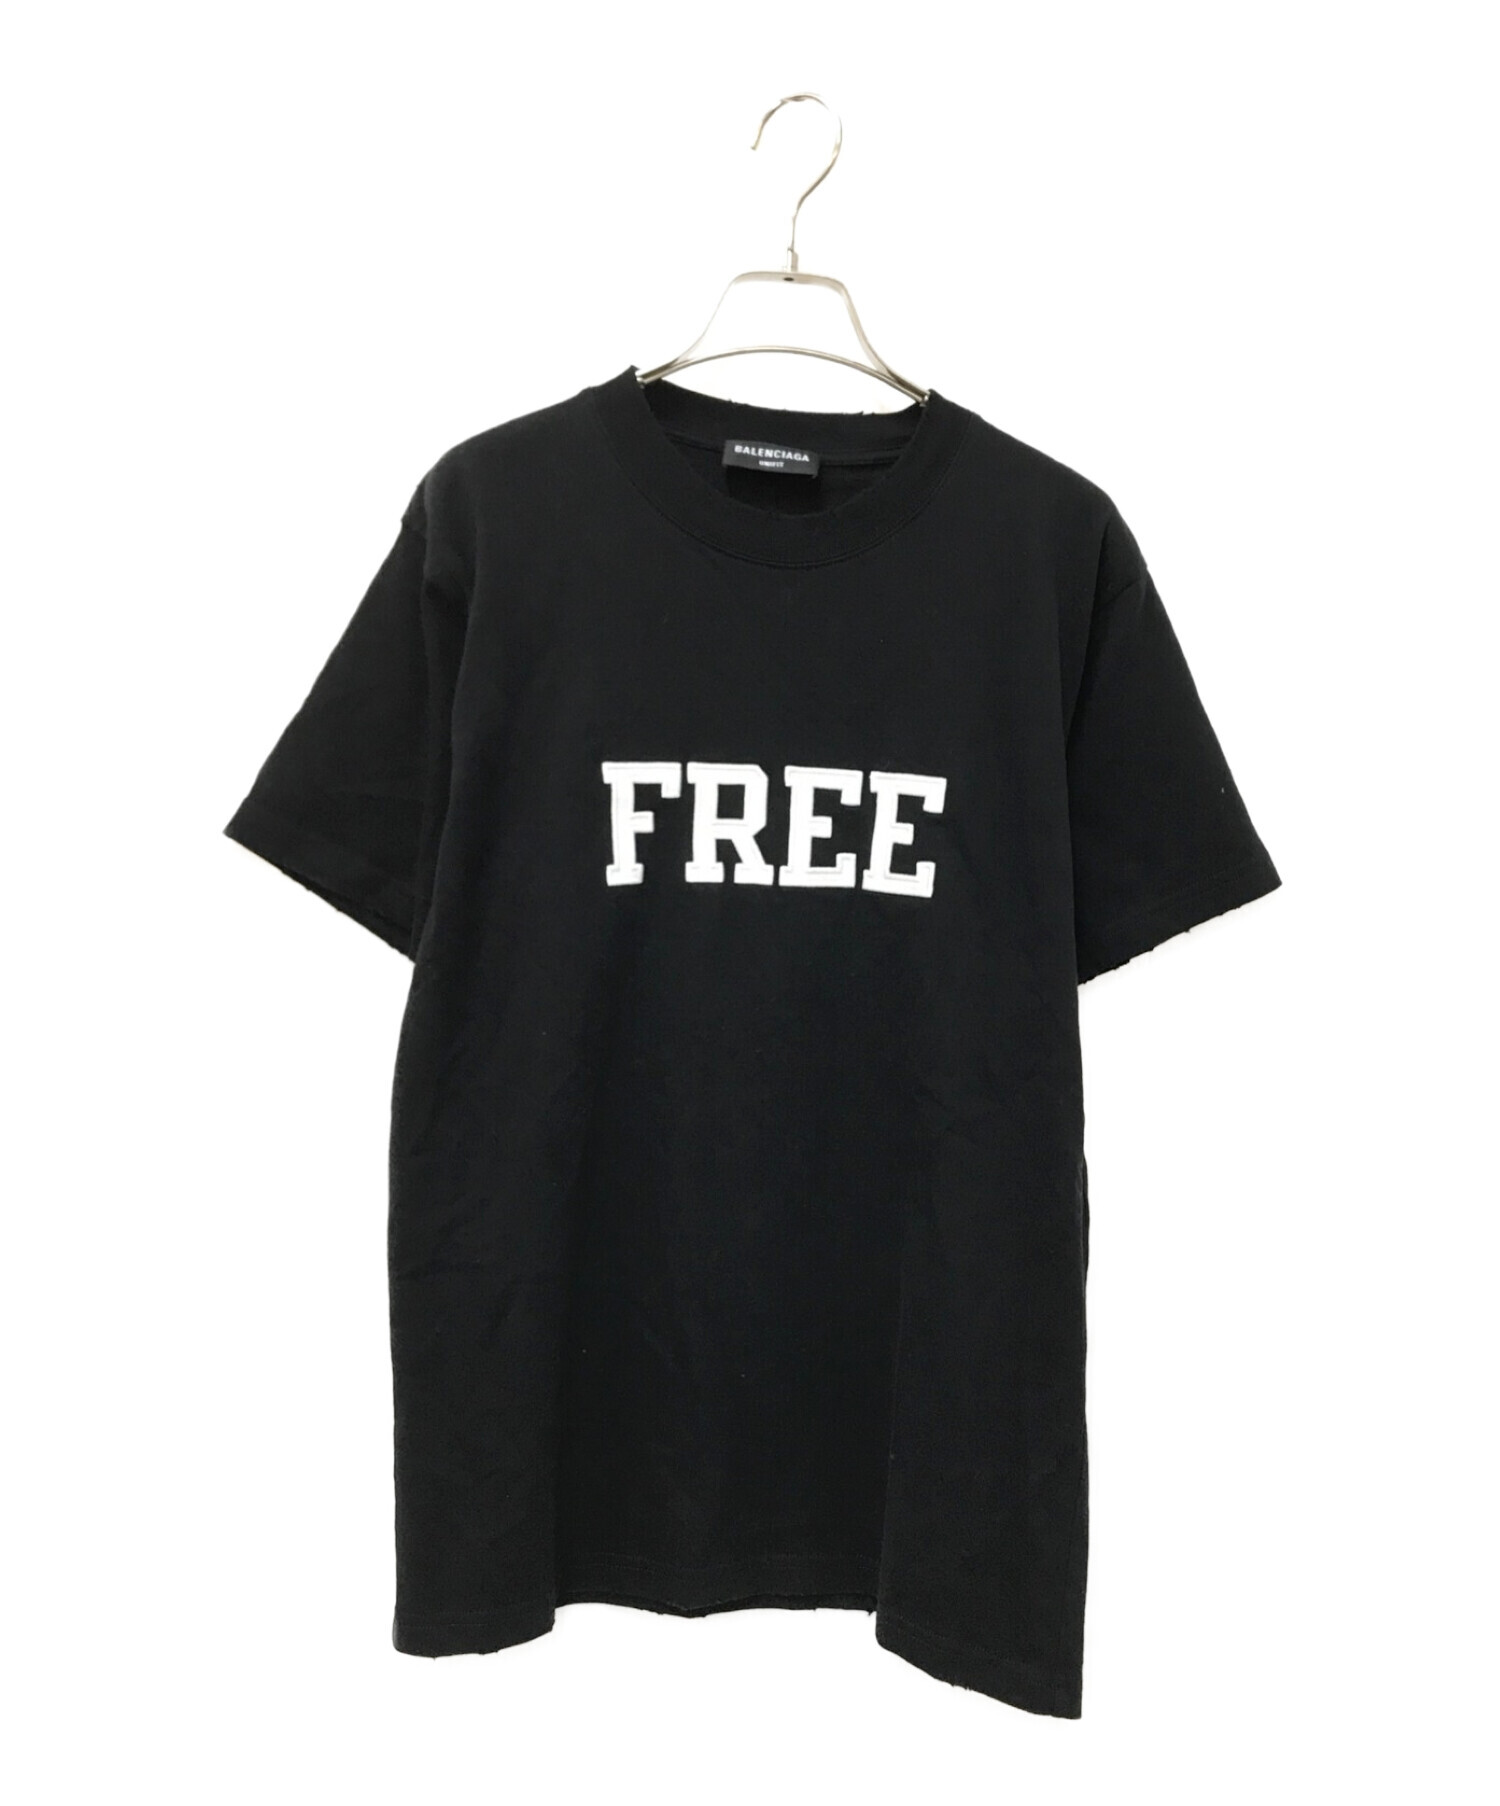 BALENCIAGA (バレンシアガ) FREE プリントTシャツ ブラック サイズ:S